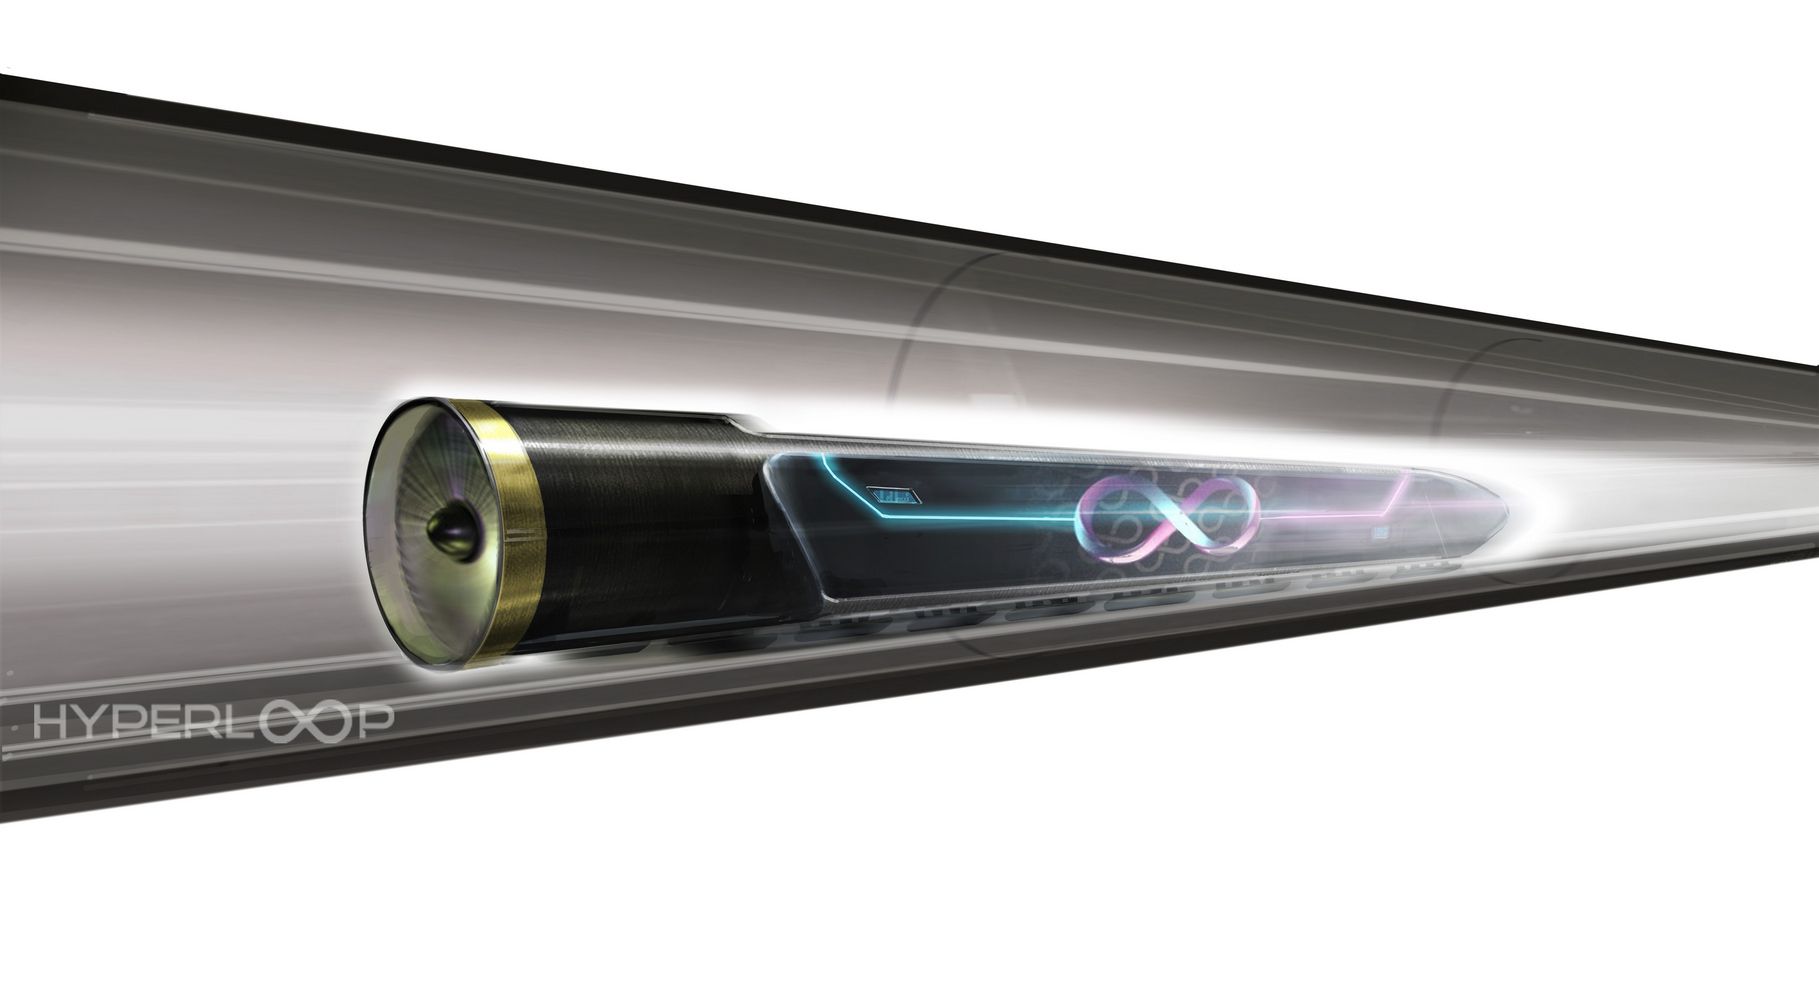 Le train ultrarapide de Virgin Hyperloop One a battu un nouveau record de vitesse. Ici, dessin du véhicule d'Hyperloop One dans sa première version, soulevé du sol par un coussin d'air. © Hyperloop One